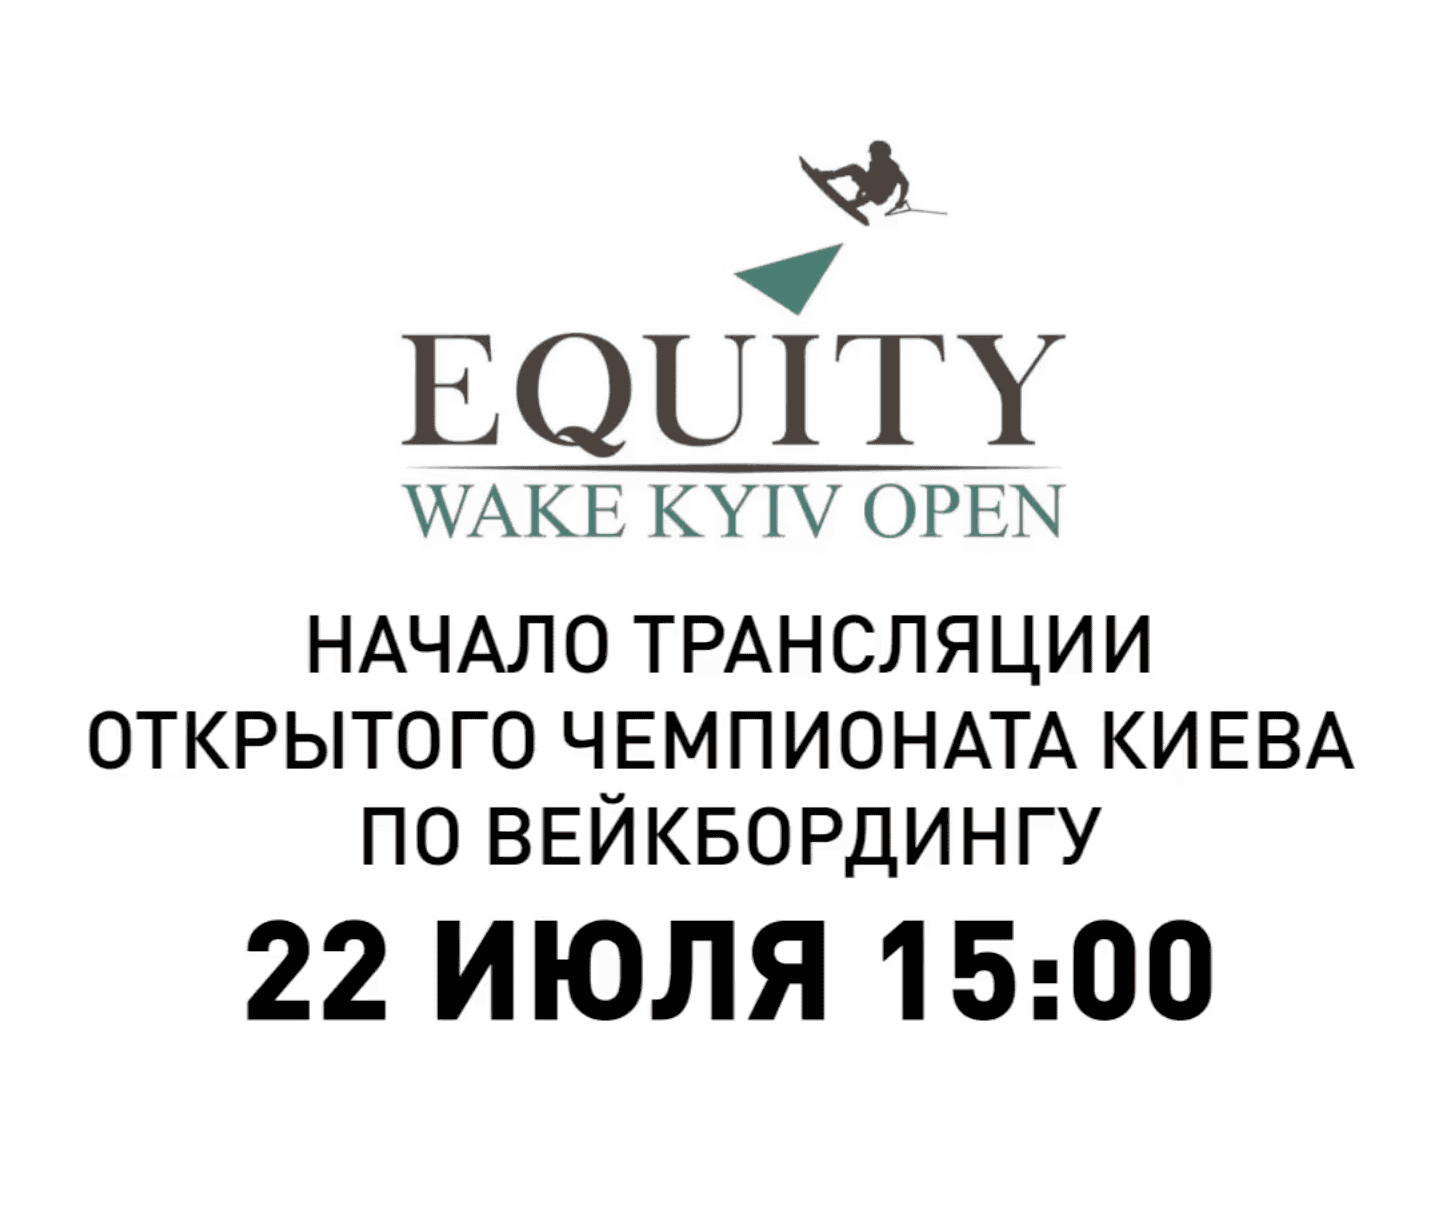 Пряма трансляція 2го дня Kyiv Equity Wake Open: cсилка на YouTube-канал